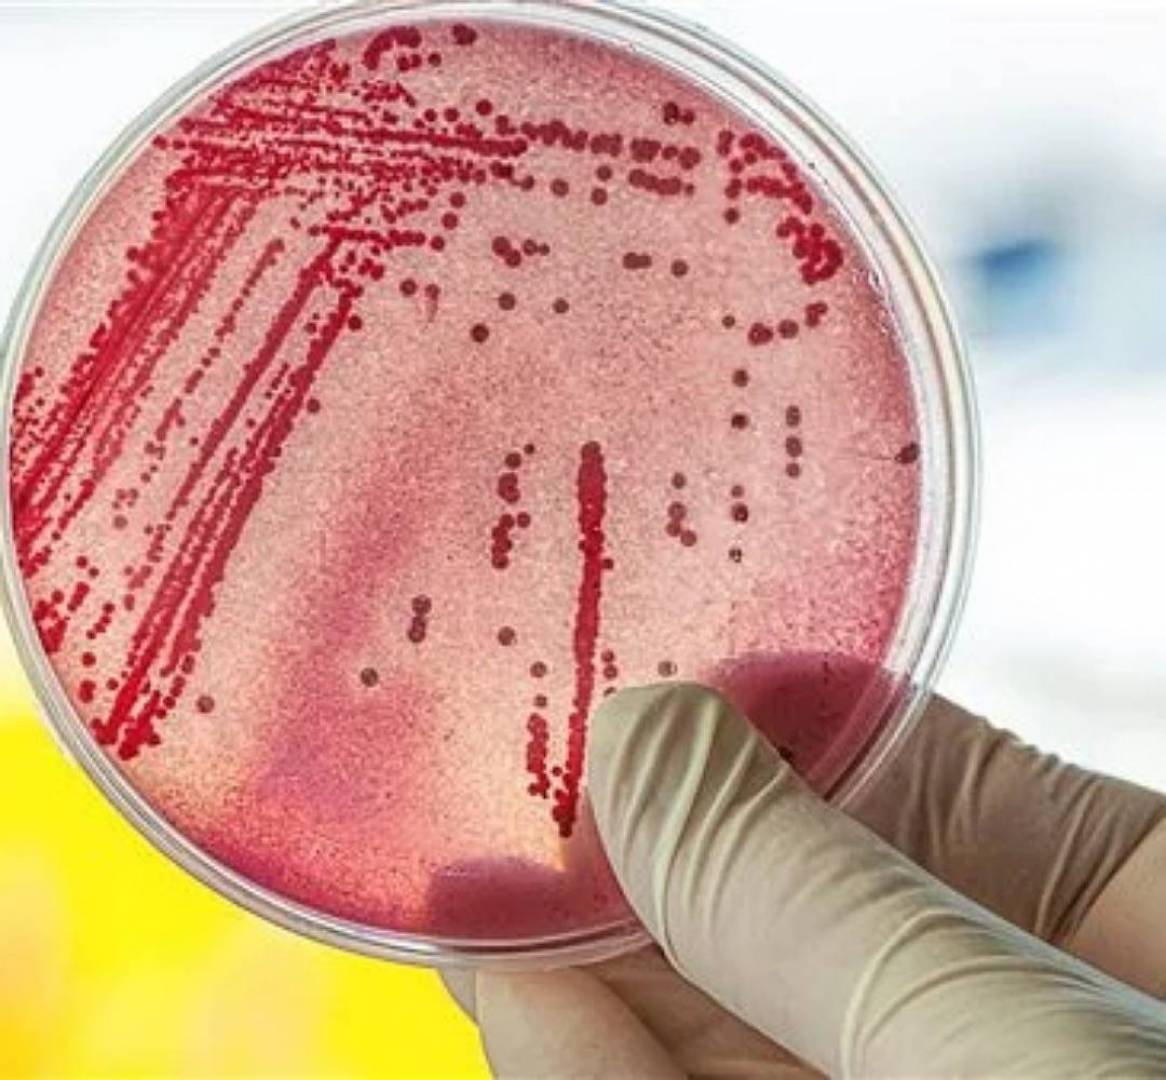 تحقيقات حول تفشي بكتيريا خطيرة في أمريكا